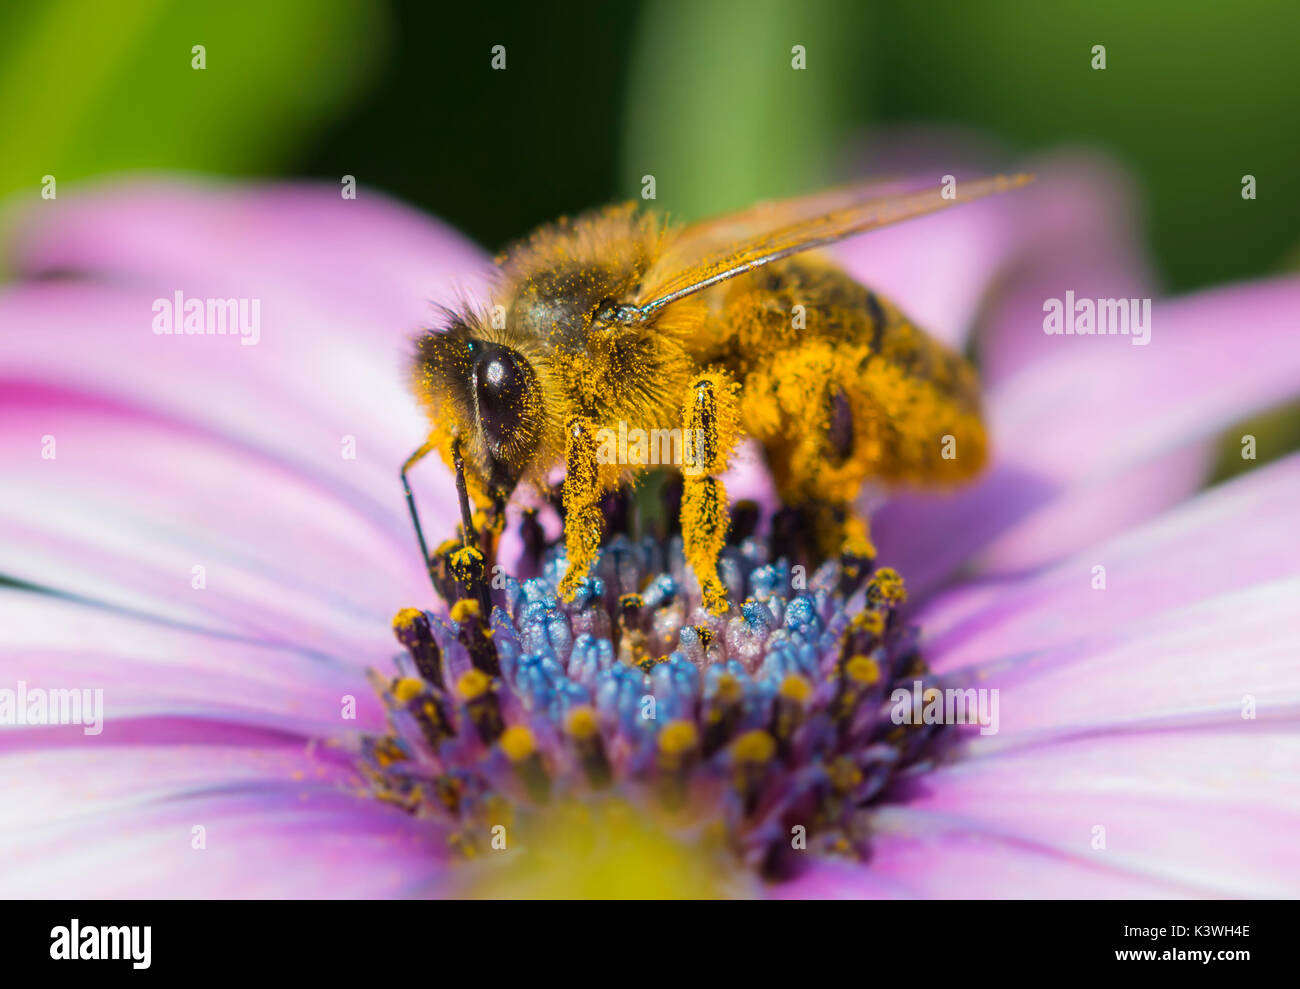 Abeille européenne (API mellifera) sur Osteospermum ecklonis (Marguerite africaine) pollinisant la fleur dans le Sussex, Royaume-Uni. Macro abeille. Abeilles. Banque D'Images